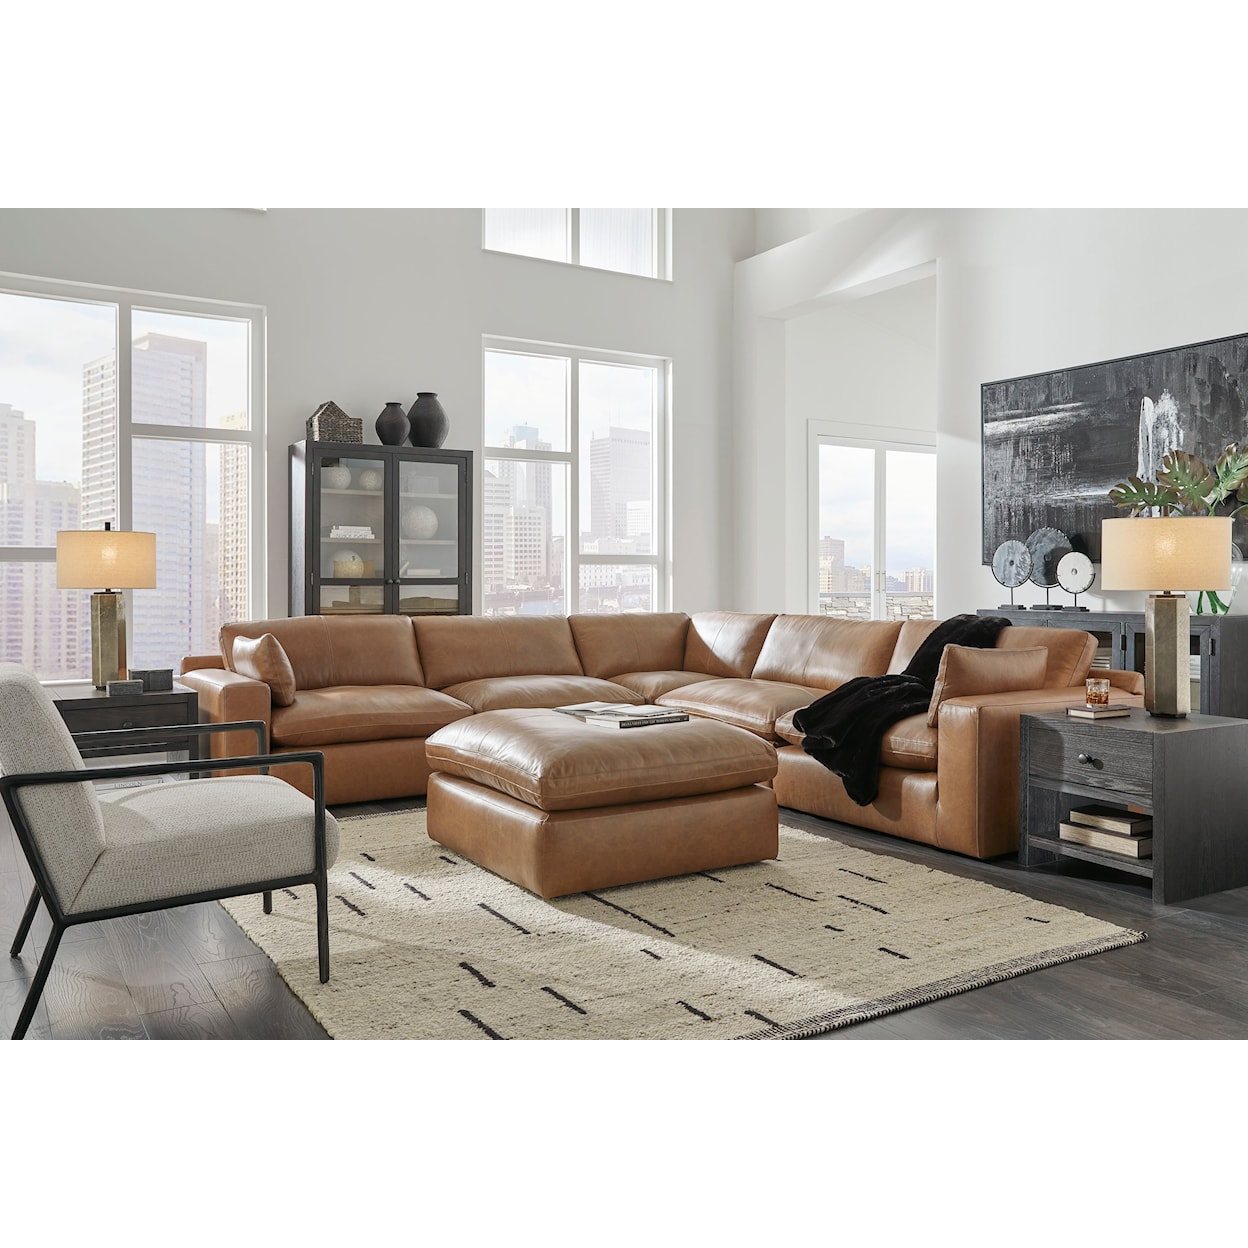 Ashley Furniture Signature Design Emilia Living Room Set